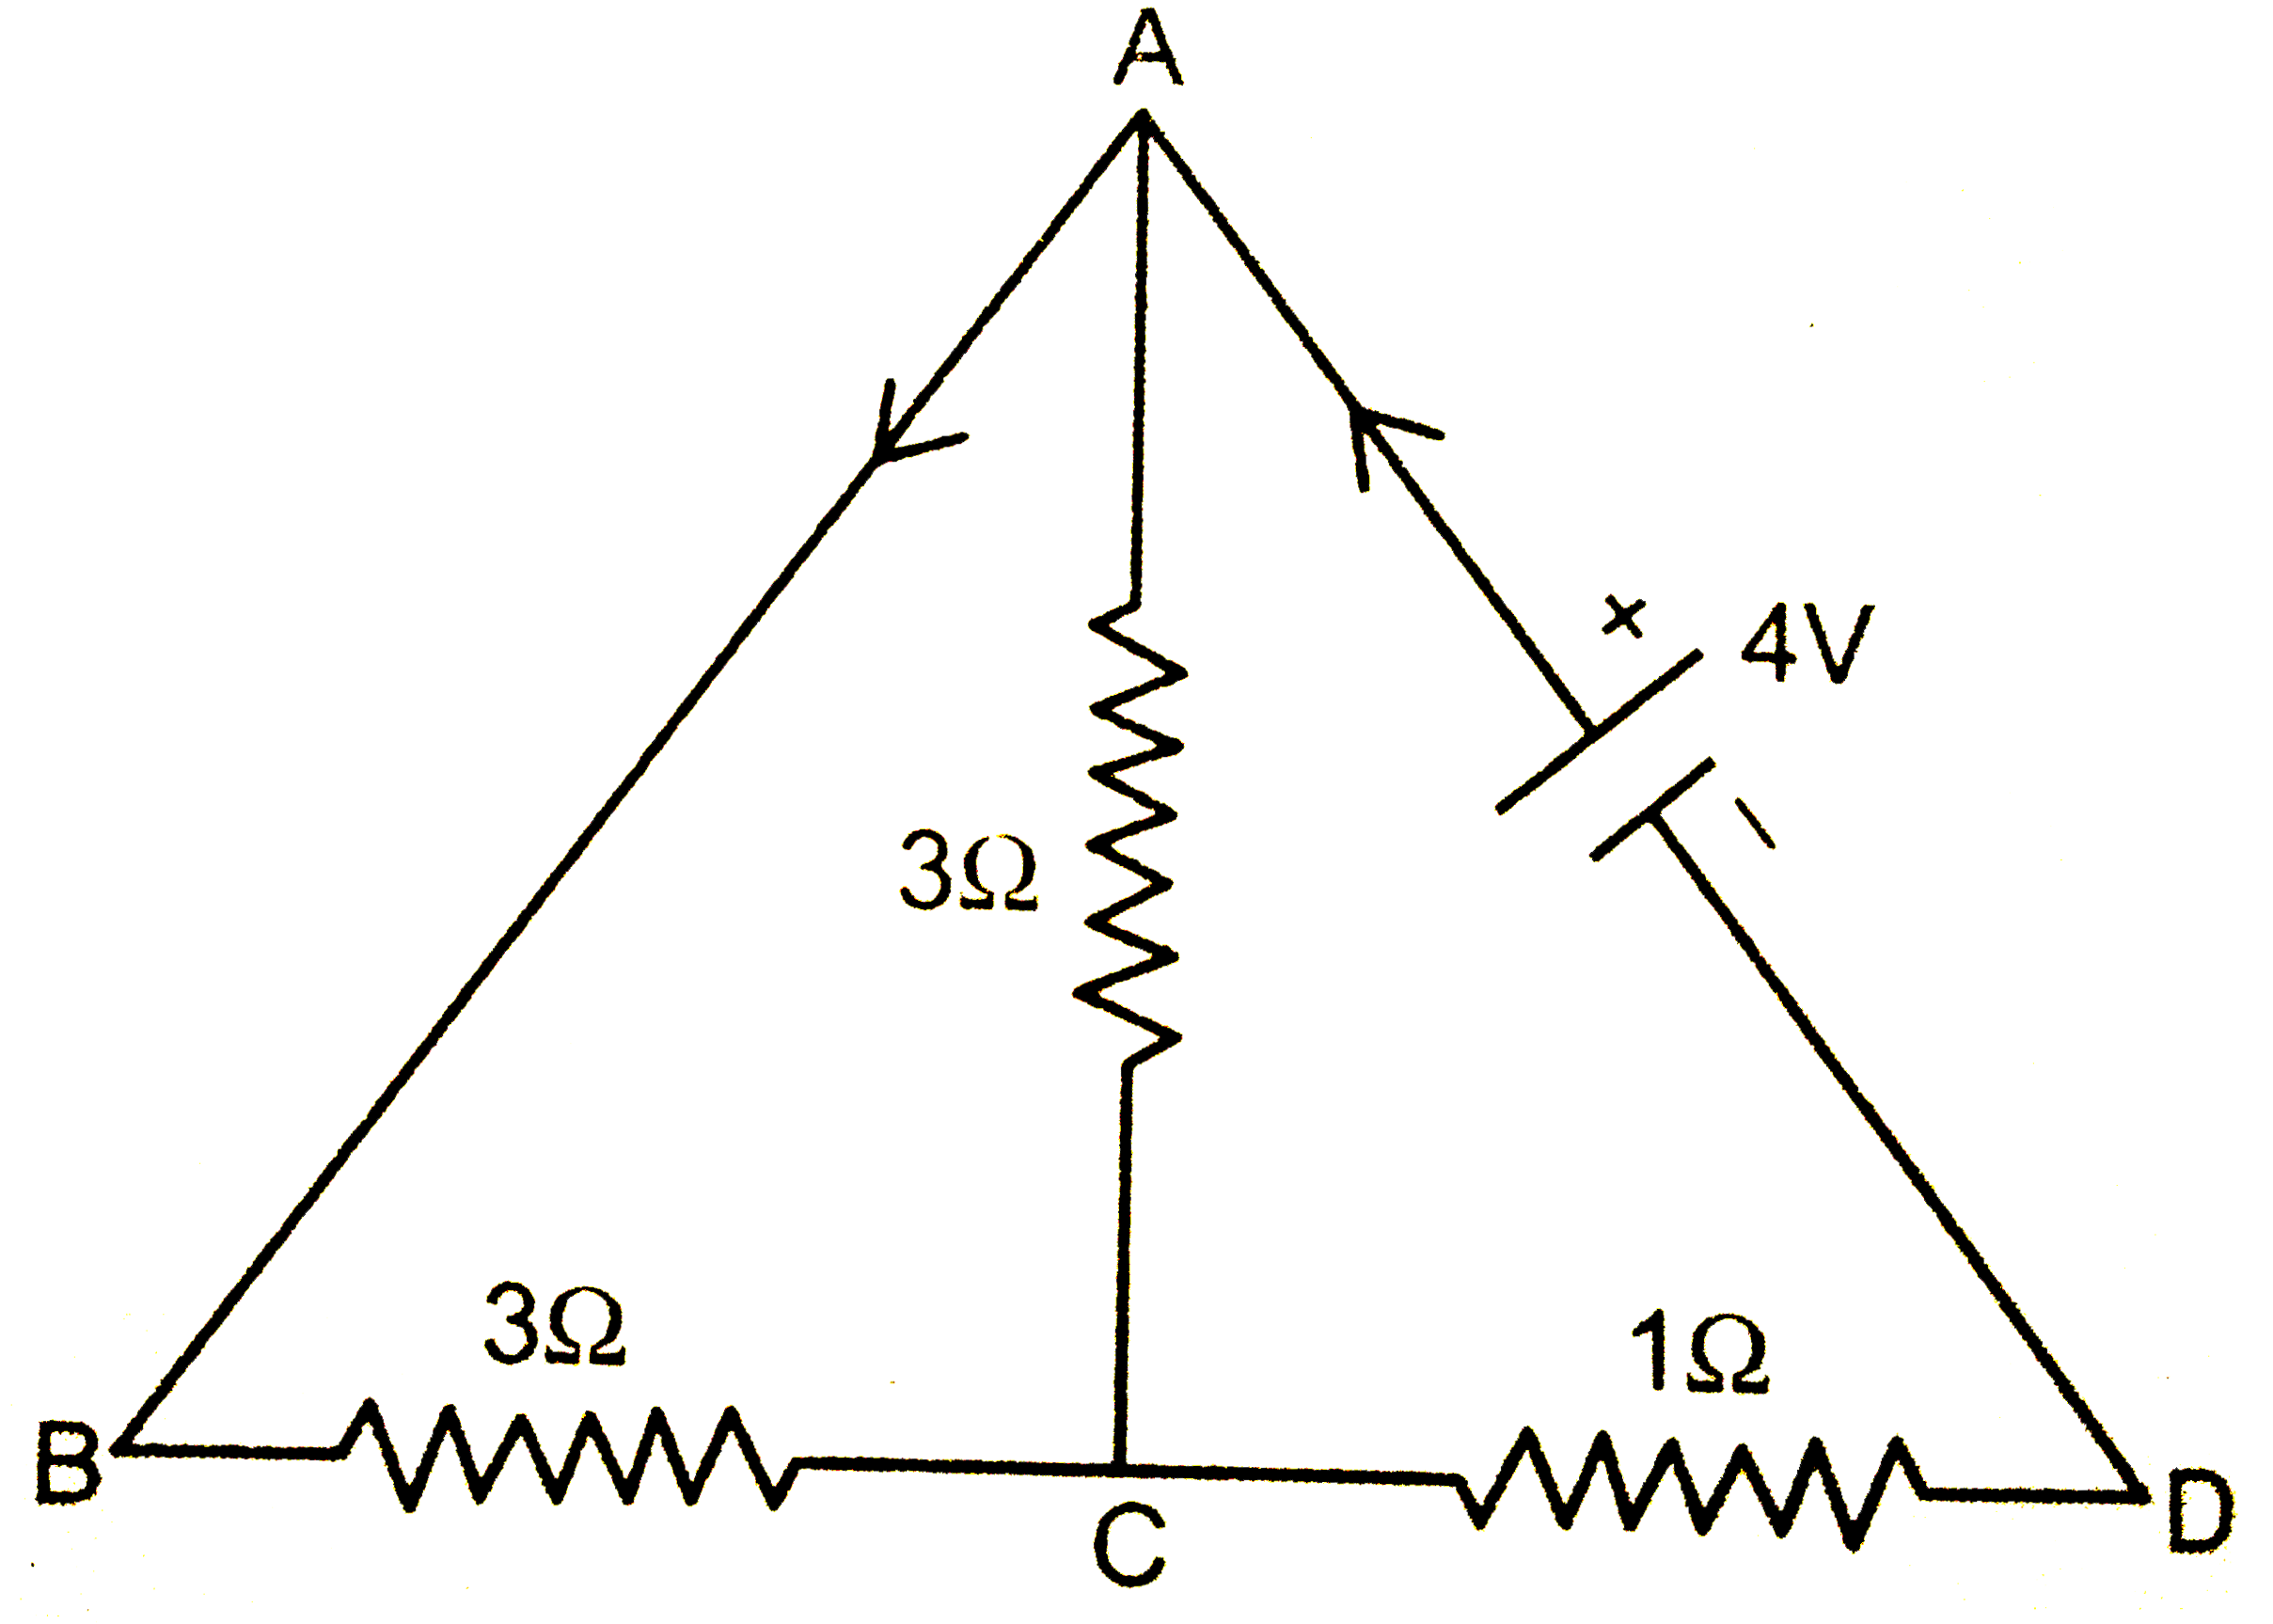 संलग्न परिपथ में सेल का विद्युत वाहक बल 4V व आंतरिक प्रतिरोध नगण्य है। ज्ञात किजिए-    (I) कुल प्रतिरोध    (ii) परिपथ की धारा   (iii) बिन्दु A व C के बौच विभवान्तर।